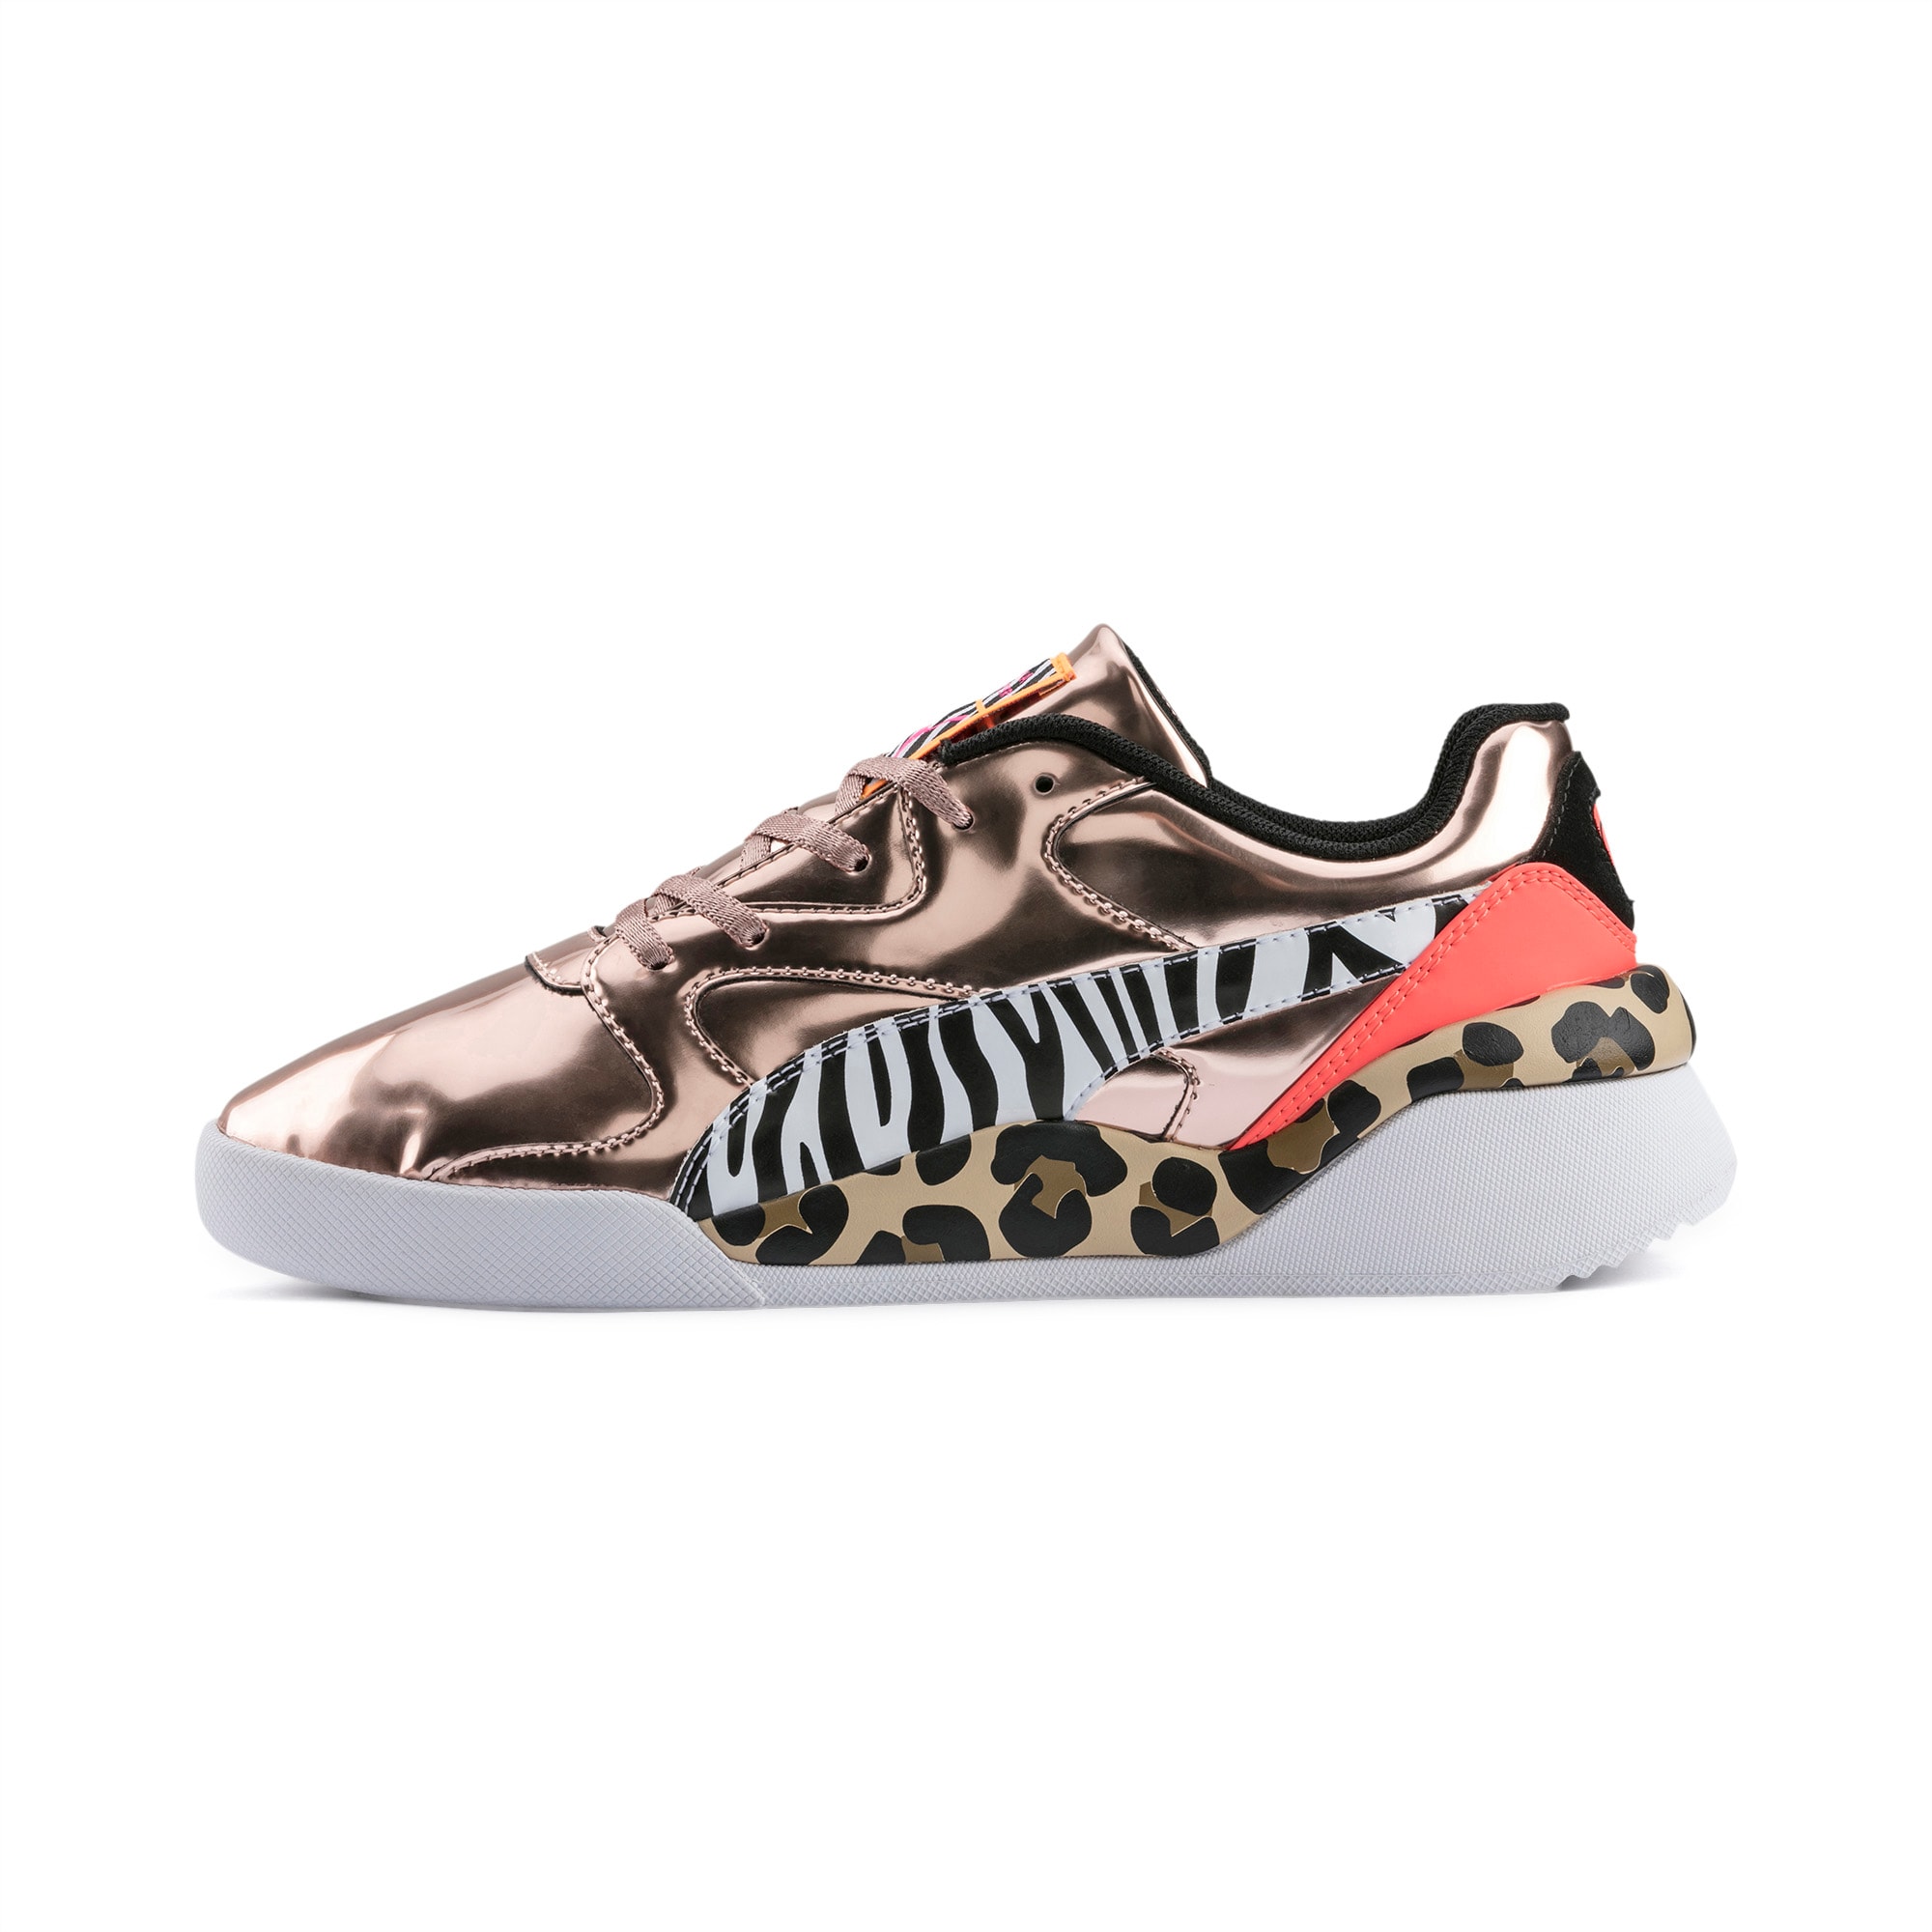 puma sophia webster sneakers